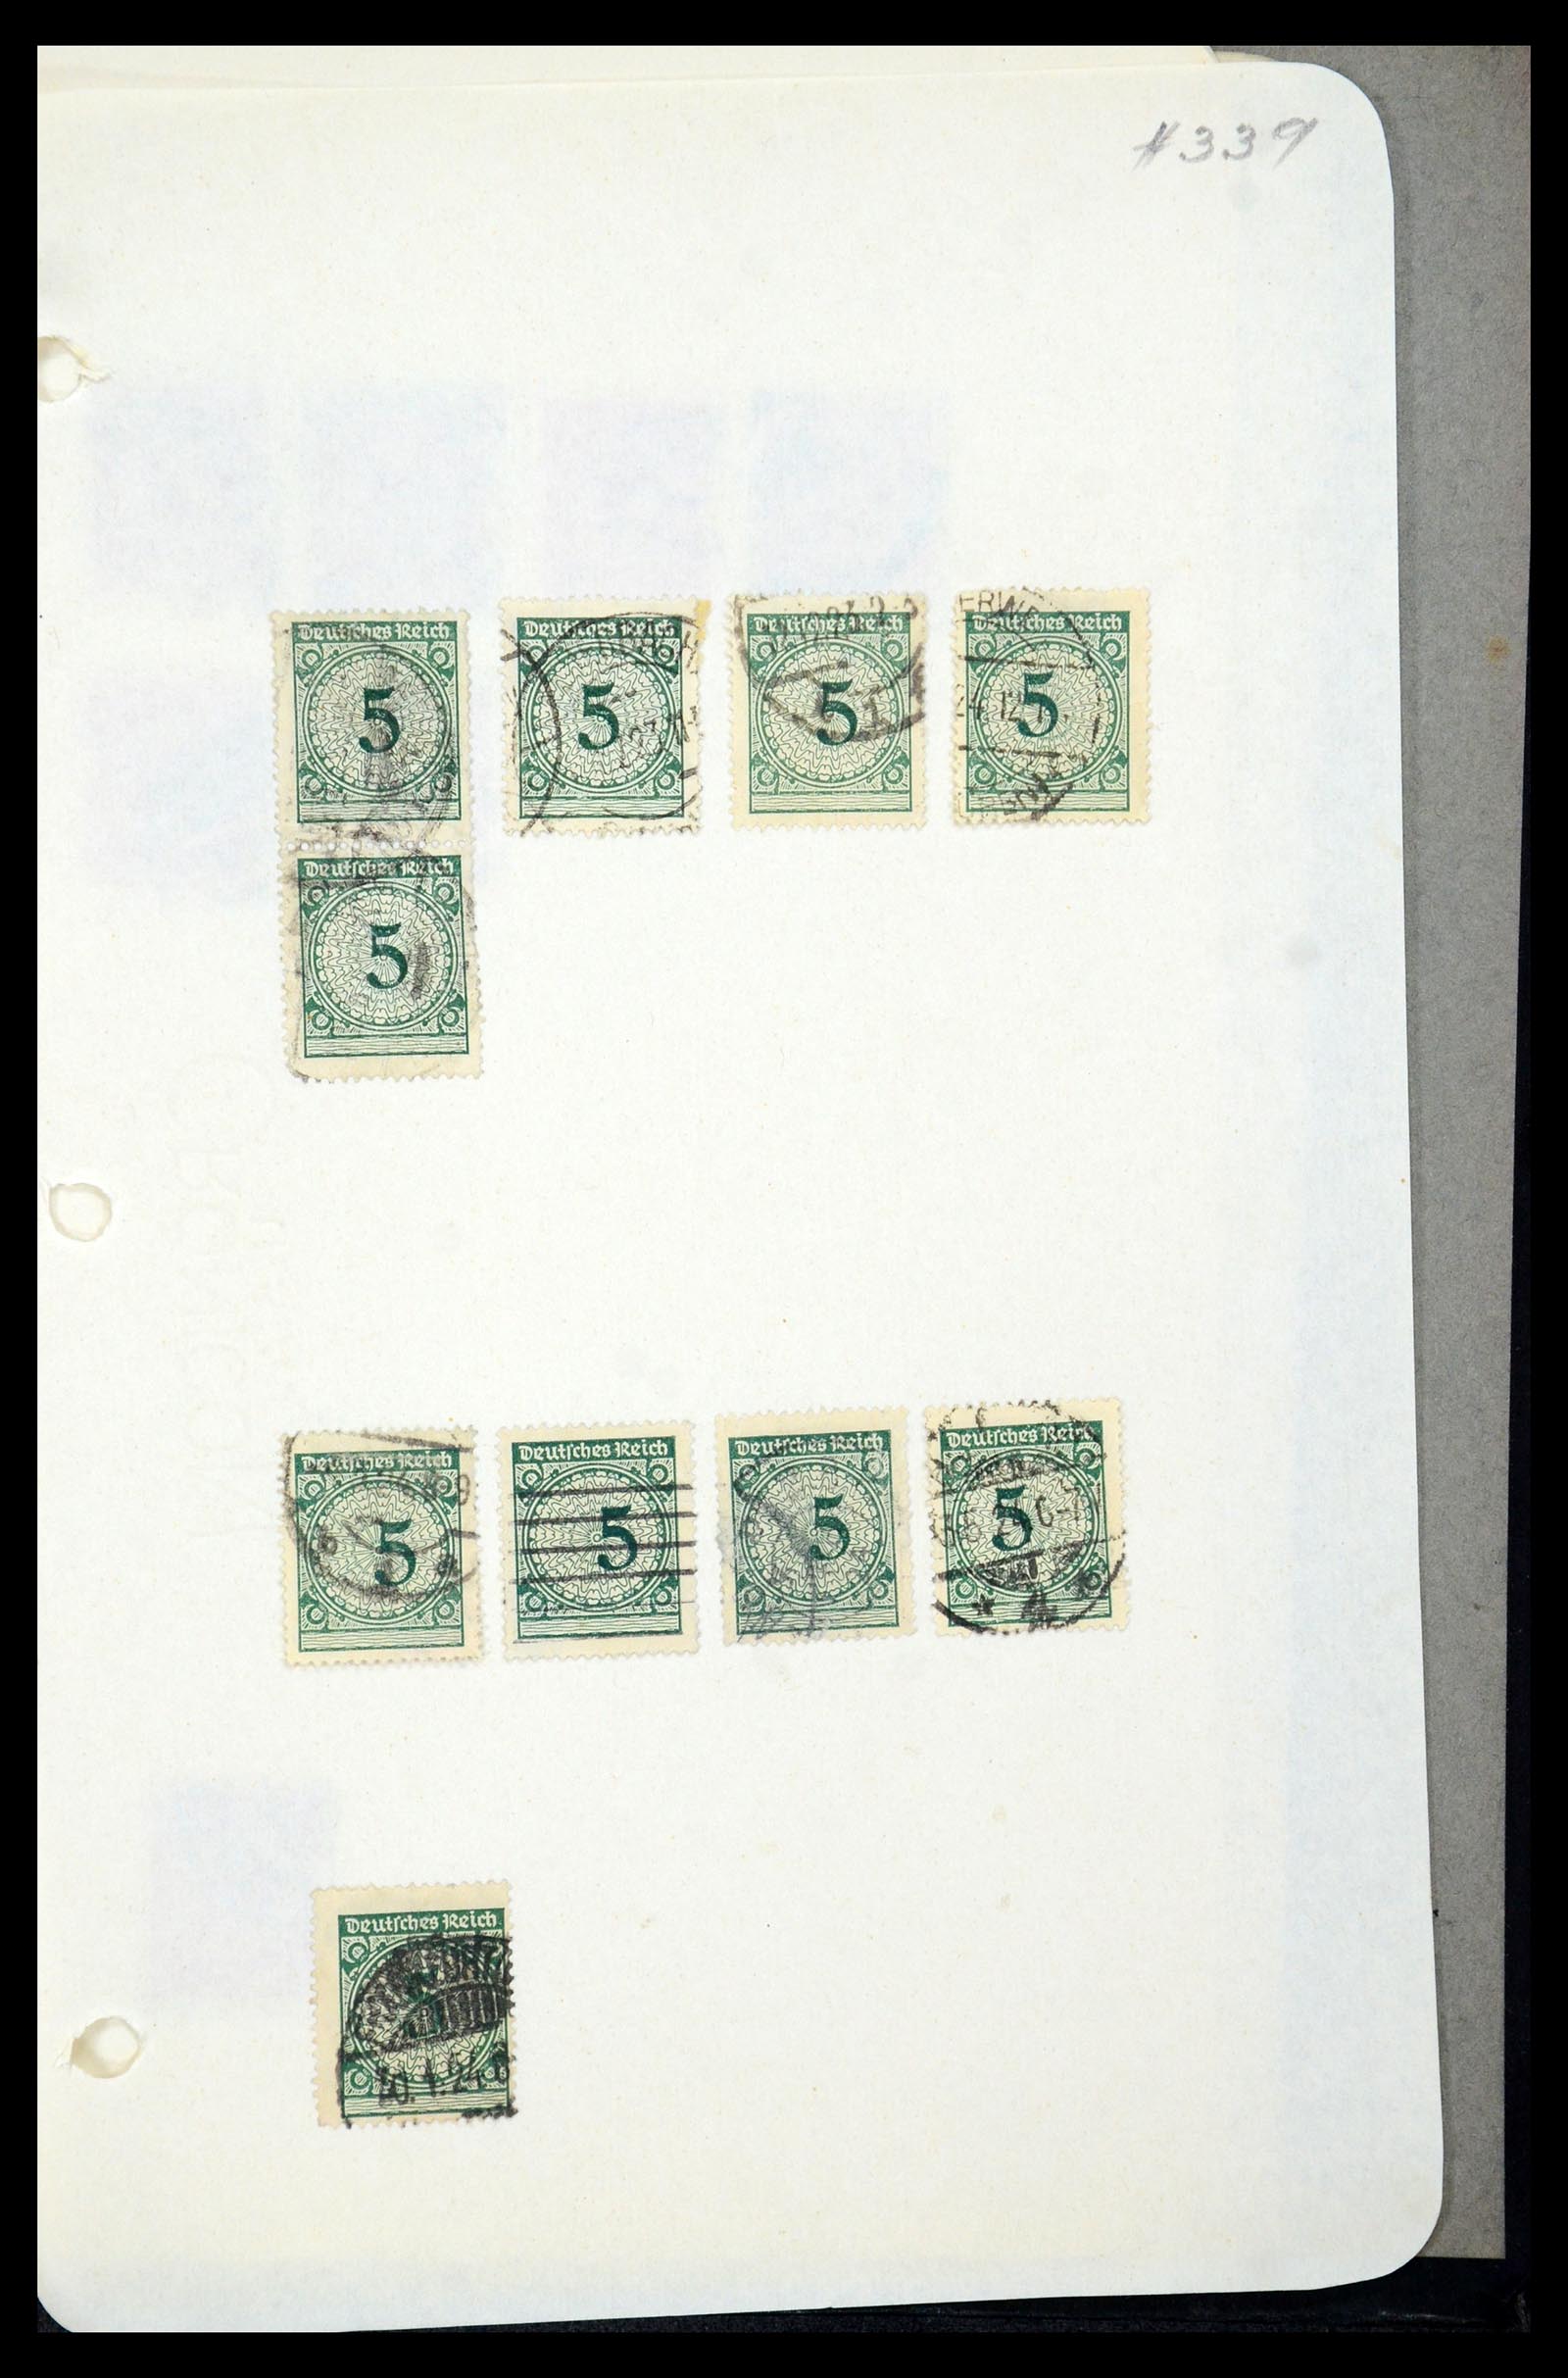 35565 868 - Postzegelverzameling 35565 Duitse Rijk infla 1919-1923.